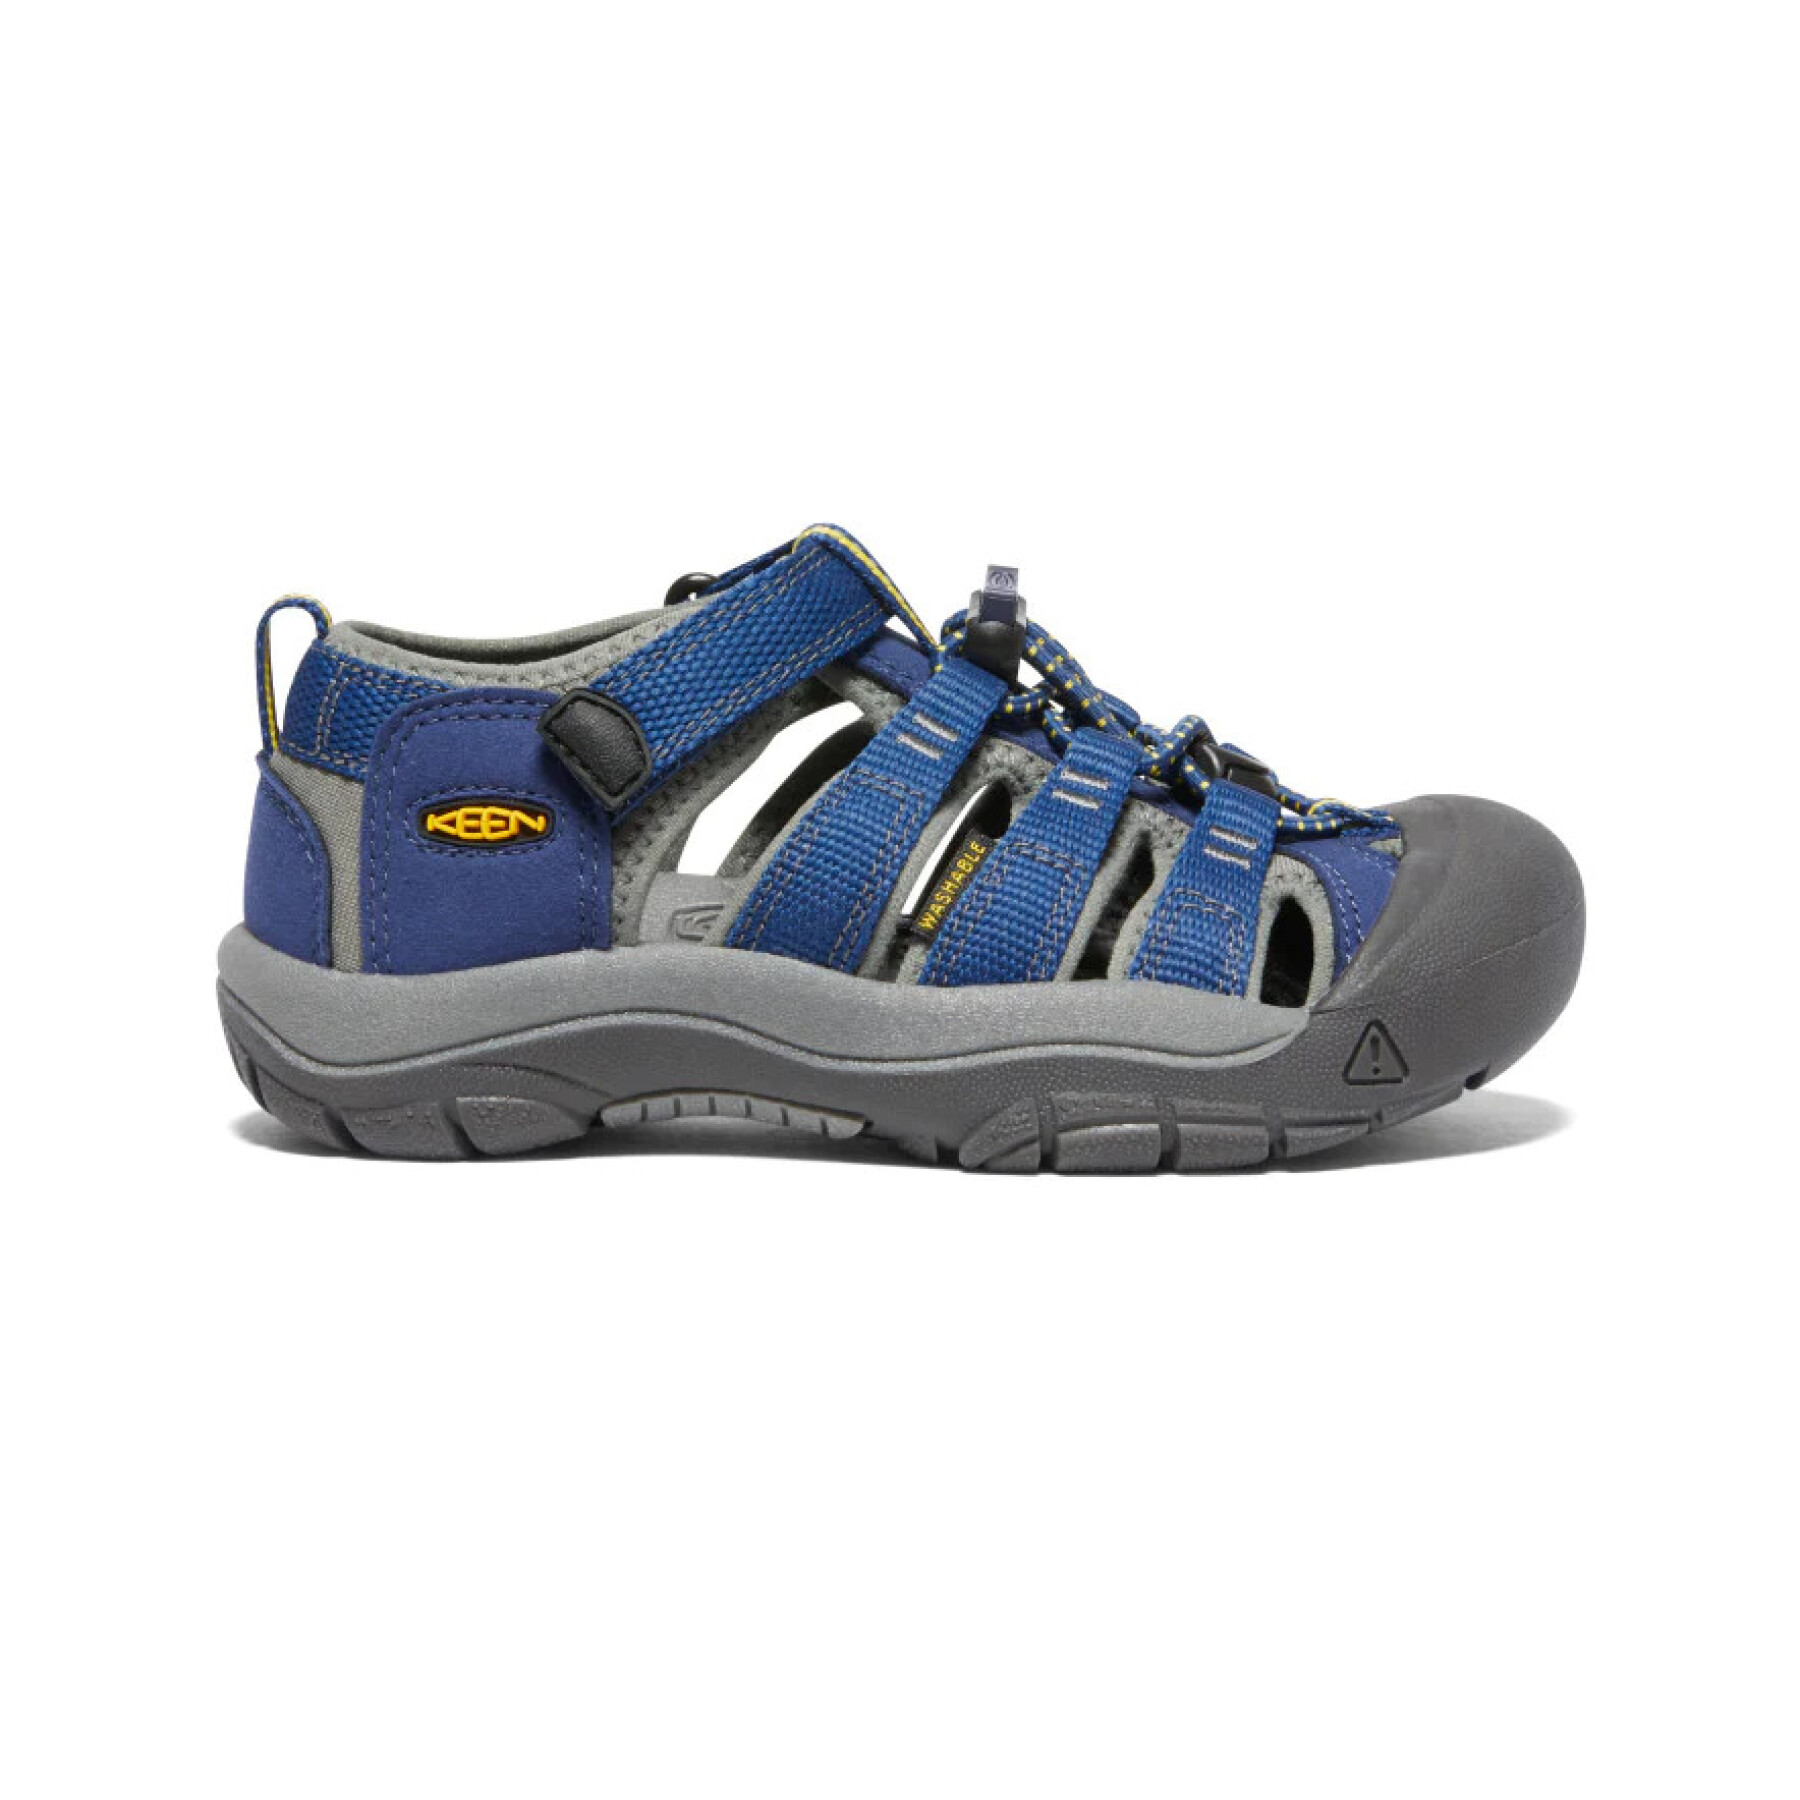 Hiking sandals for children Keen Newport H2